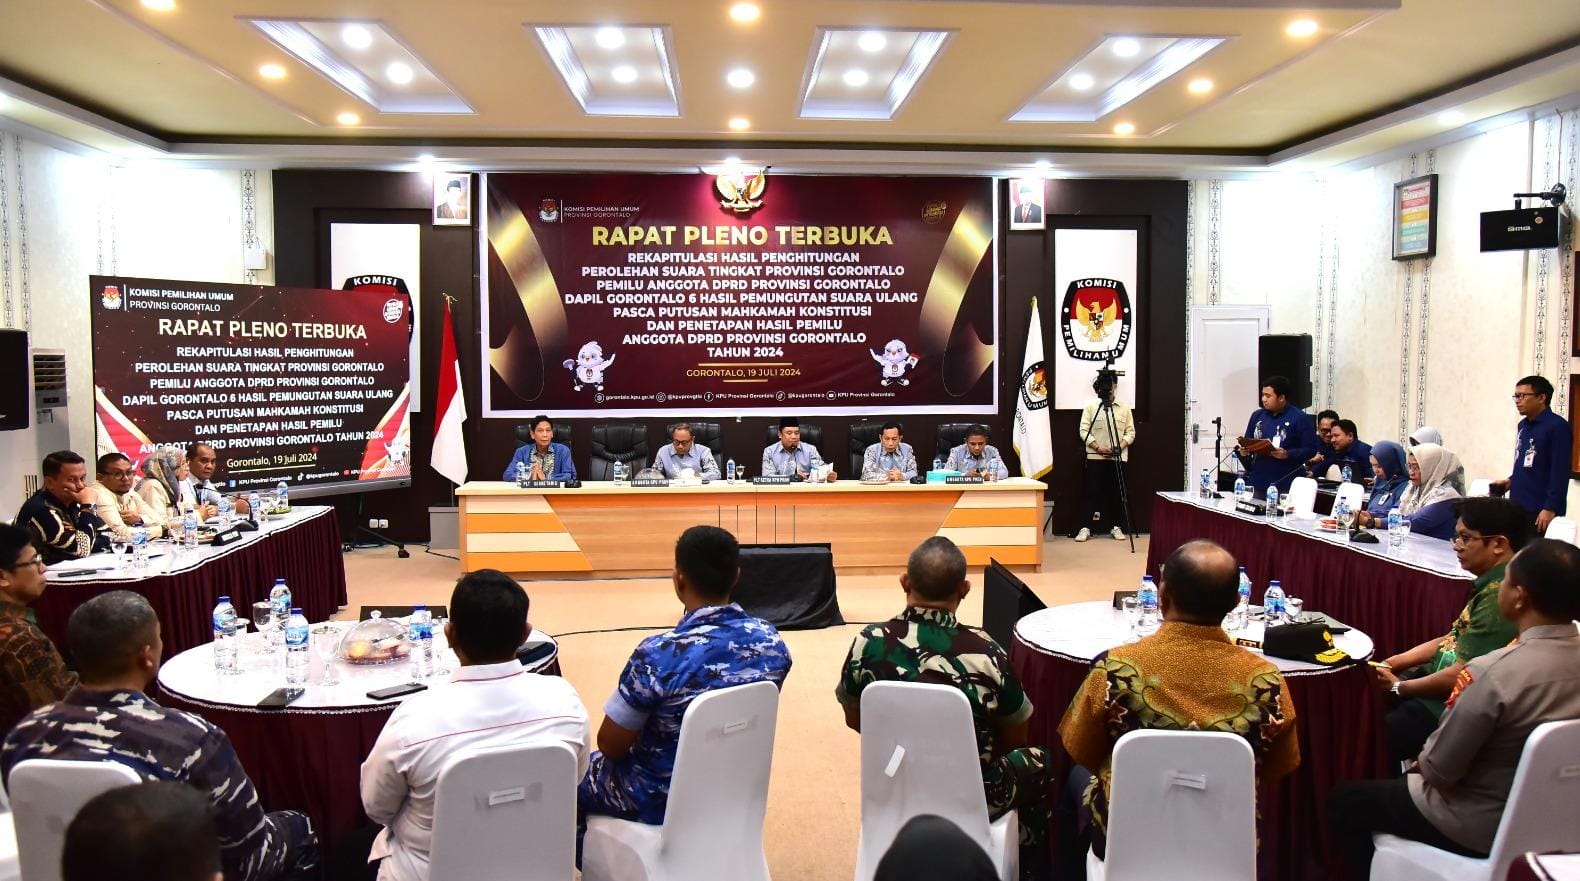  KPU Gelar Rekapitulasi Hasil PSU DPRD Provinsi Gorontalo